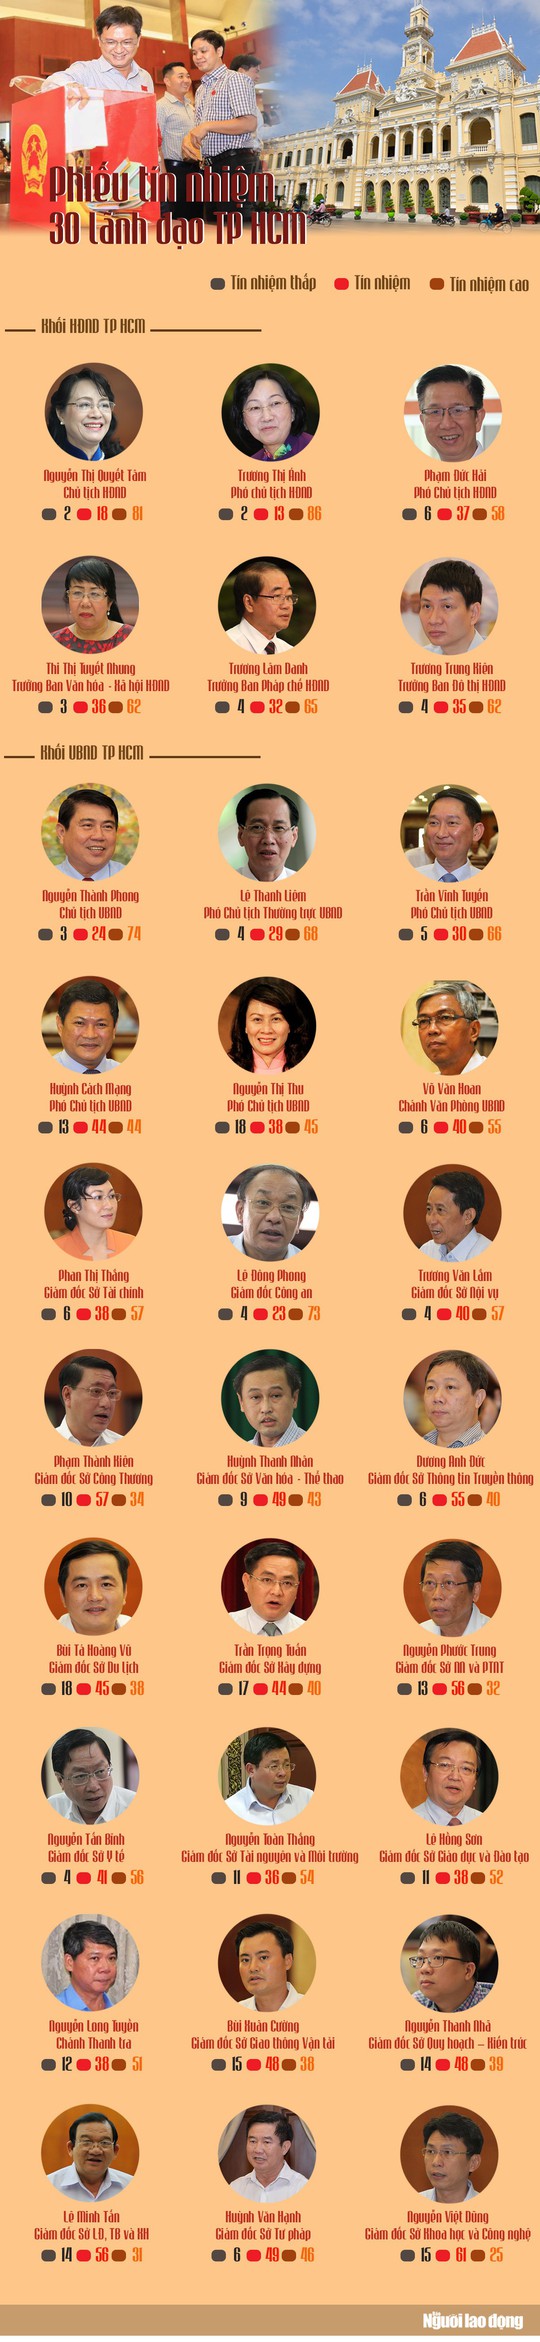 [Infographic] Kết quả phiếu tín nhiệm 30 lãnh đạo chủ chốt TP HCM - Ảnh 1.